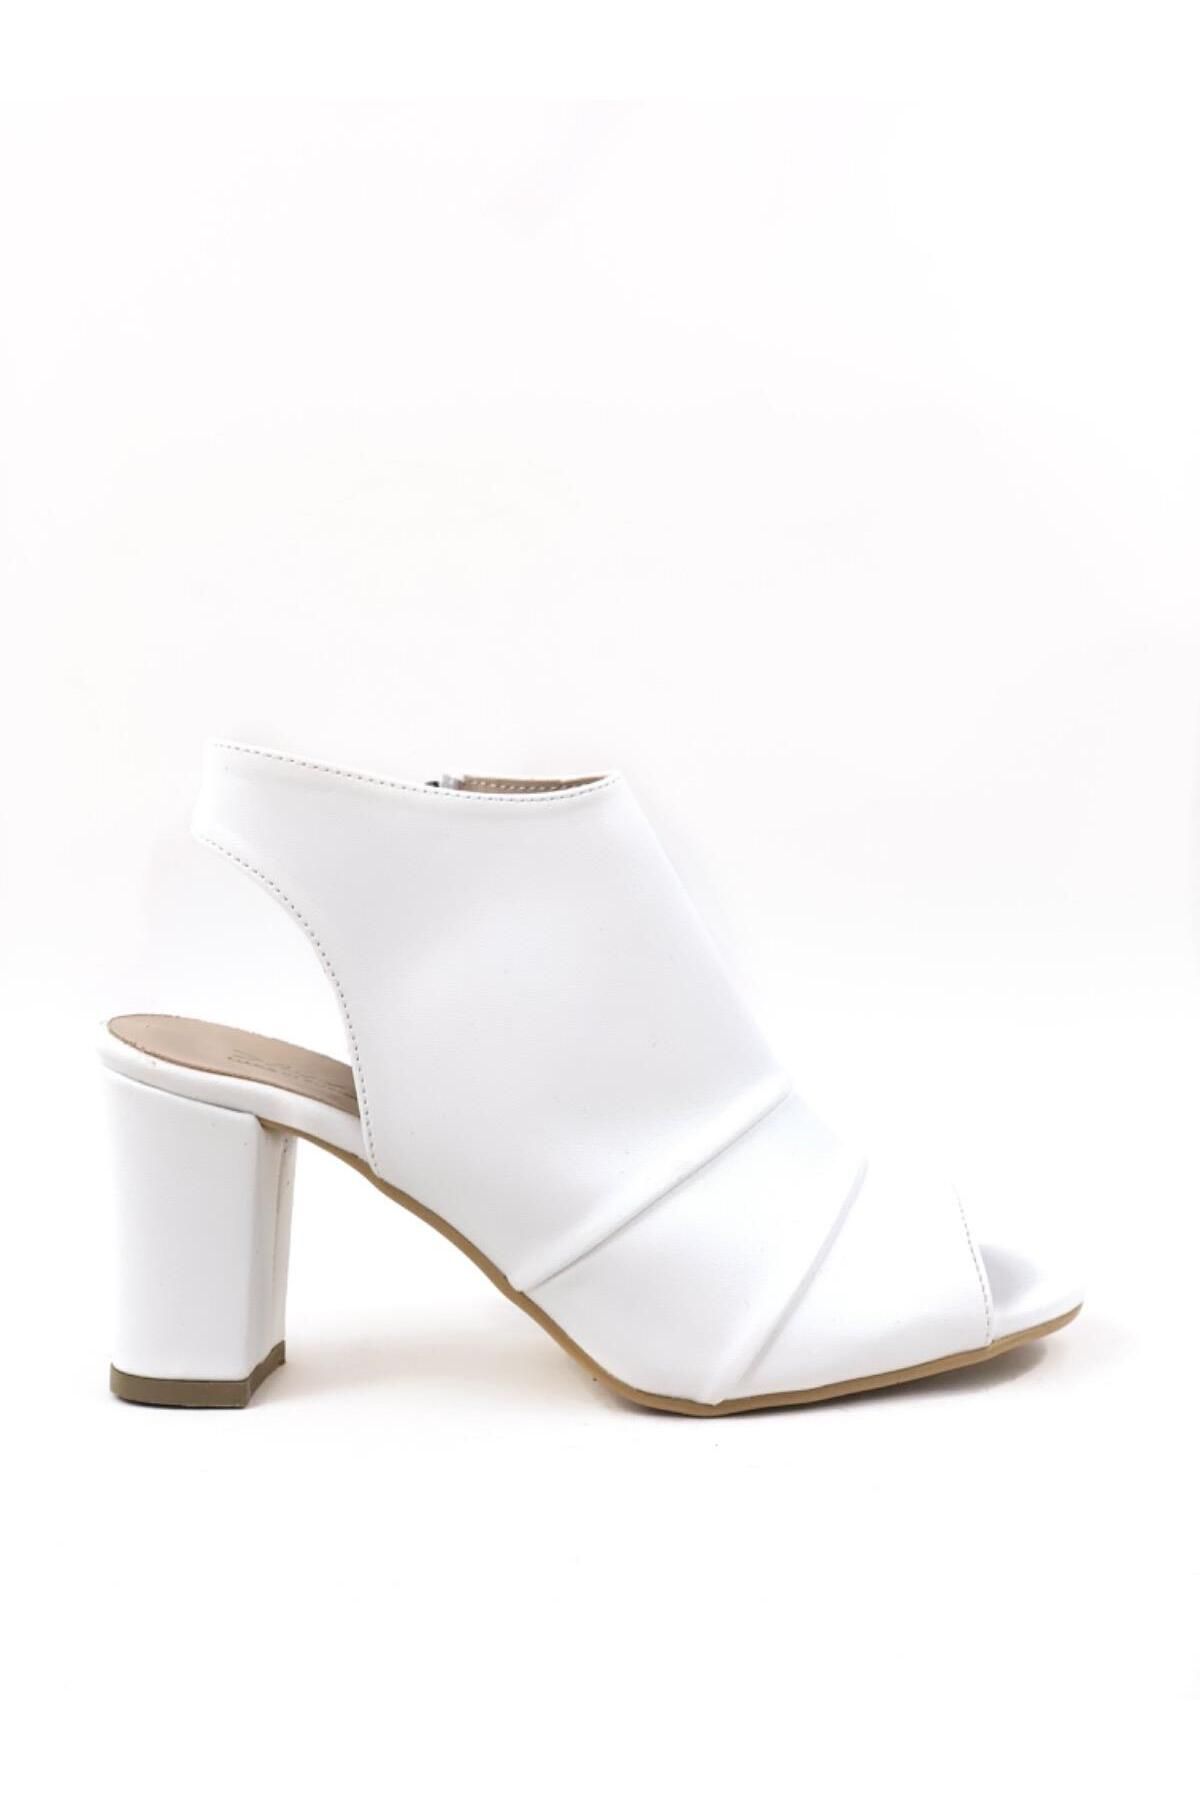 bescobel Kadın Konla Beyaz Günlük Topuklu Ayakkabı